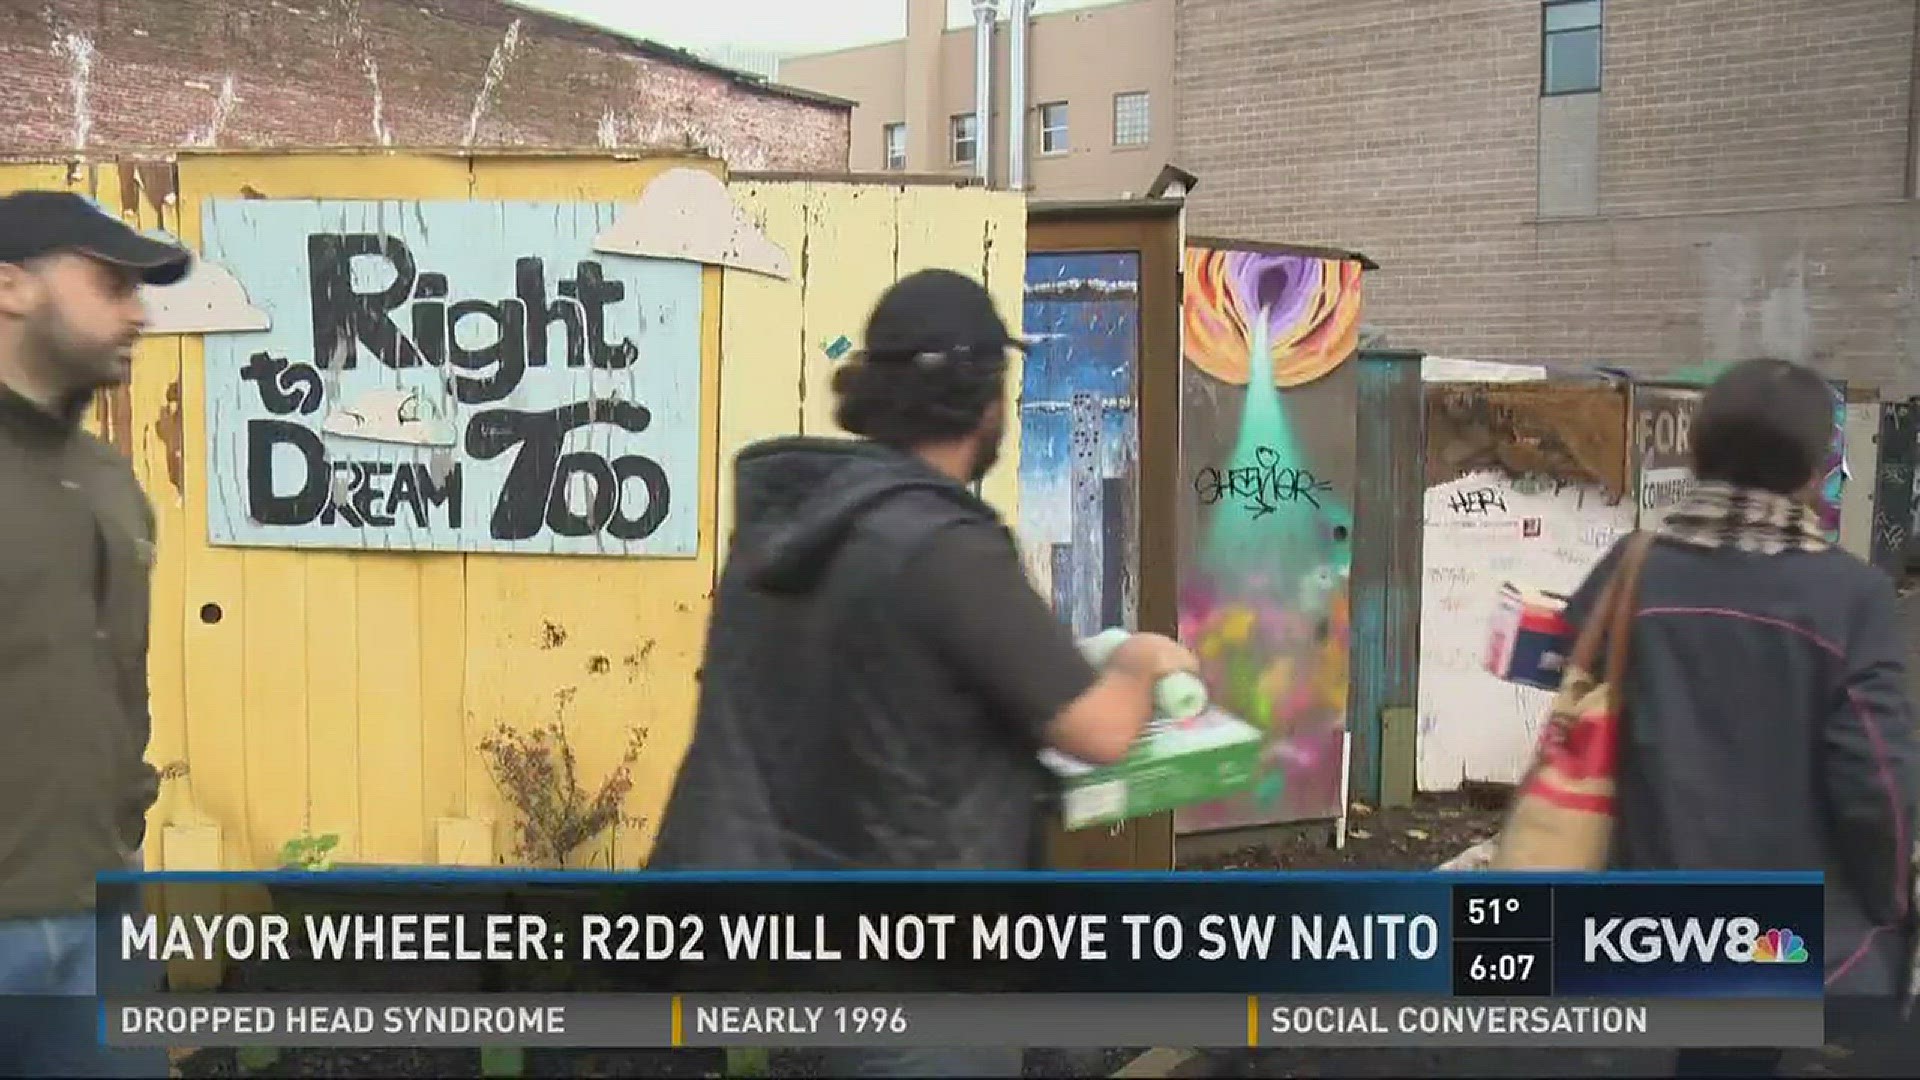 Mayor Wheeler: R2D2 will not move to SW Naito